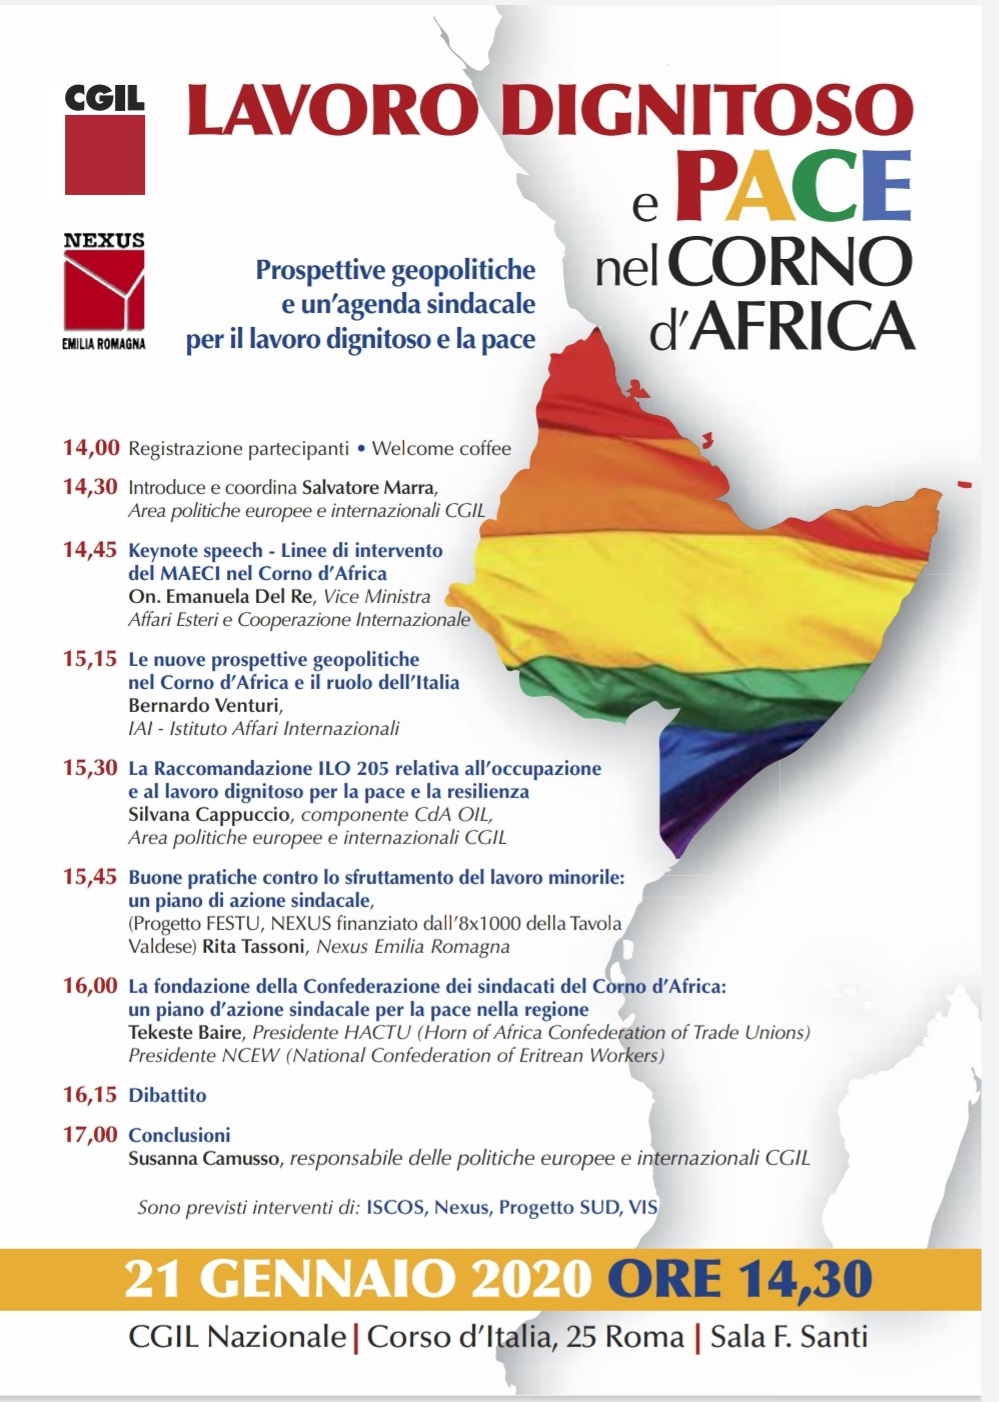 Cgil nazionale, Nexus ER: Lavoro dignitoso e pace nel Corno d’Africa, Roma 21 gennaio 2020